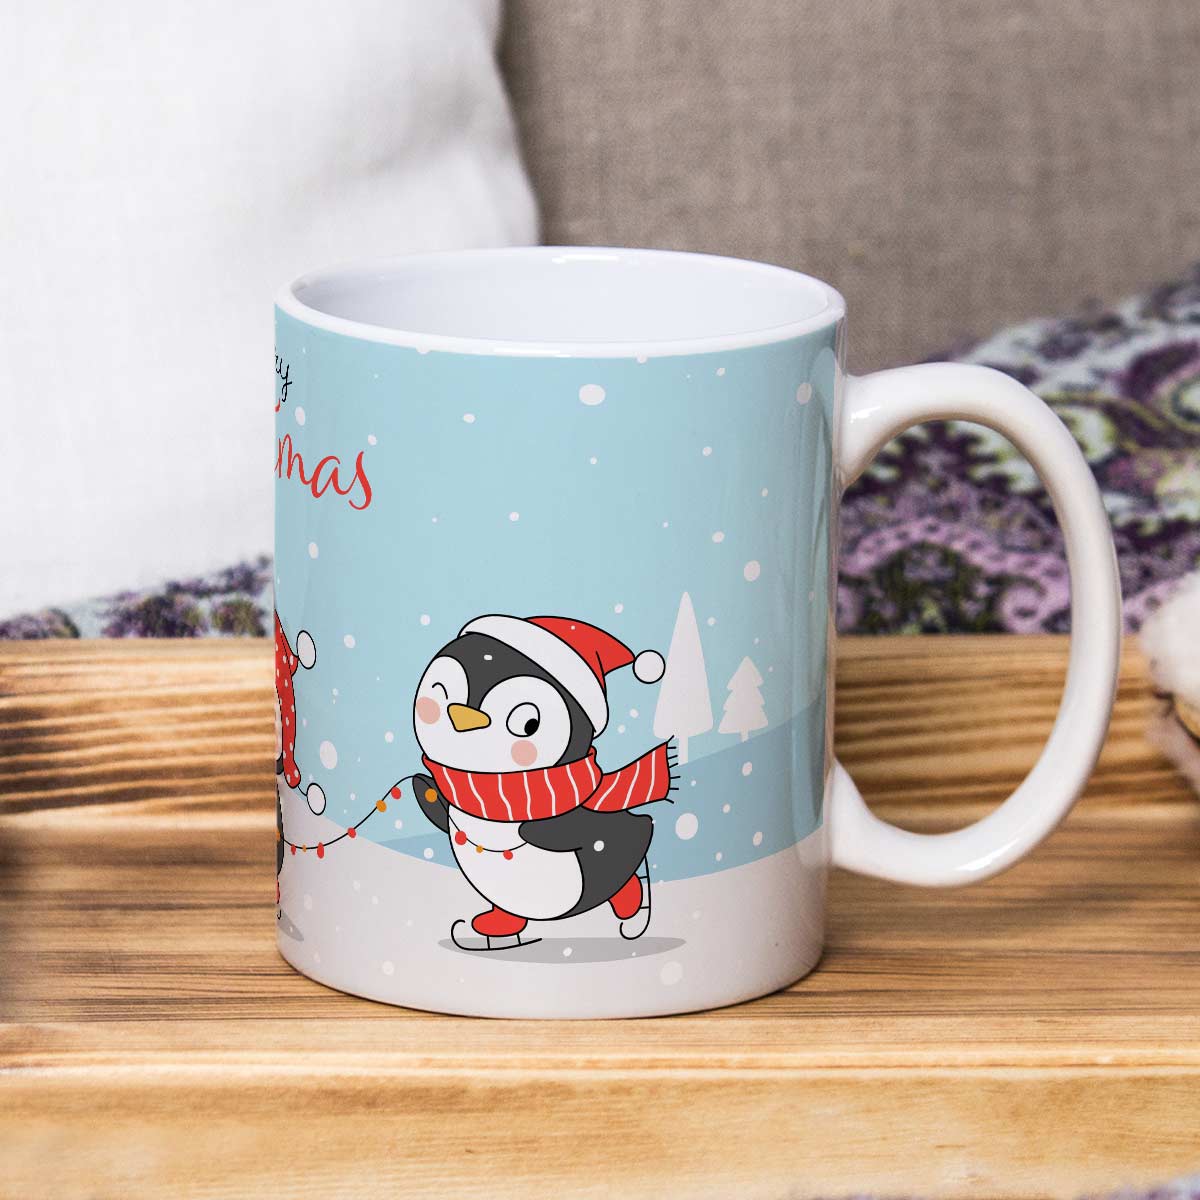 Penguin Parade: Merry Christmas Ceramic Mug